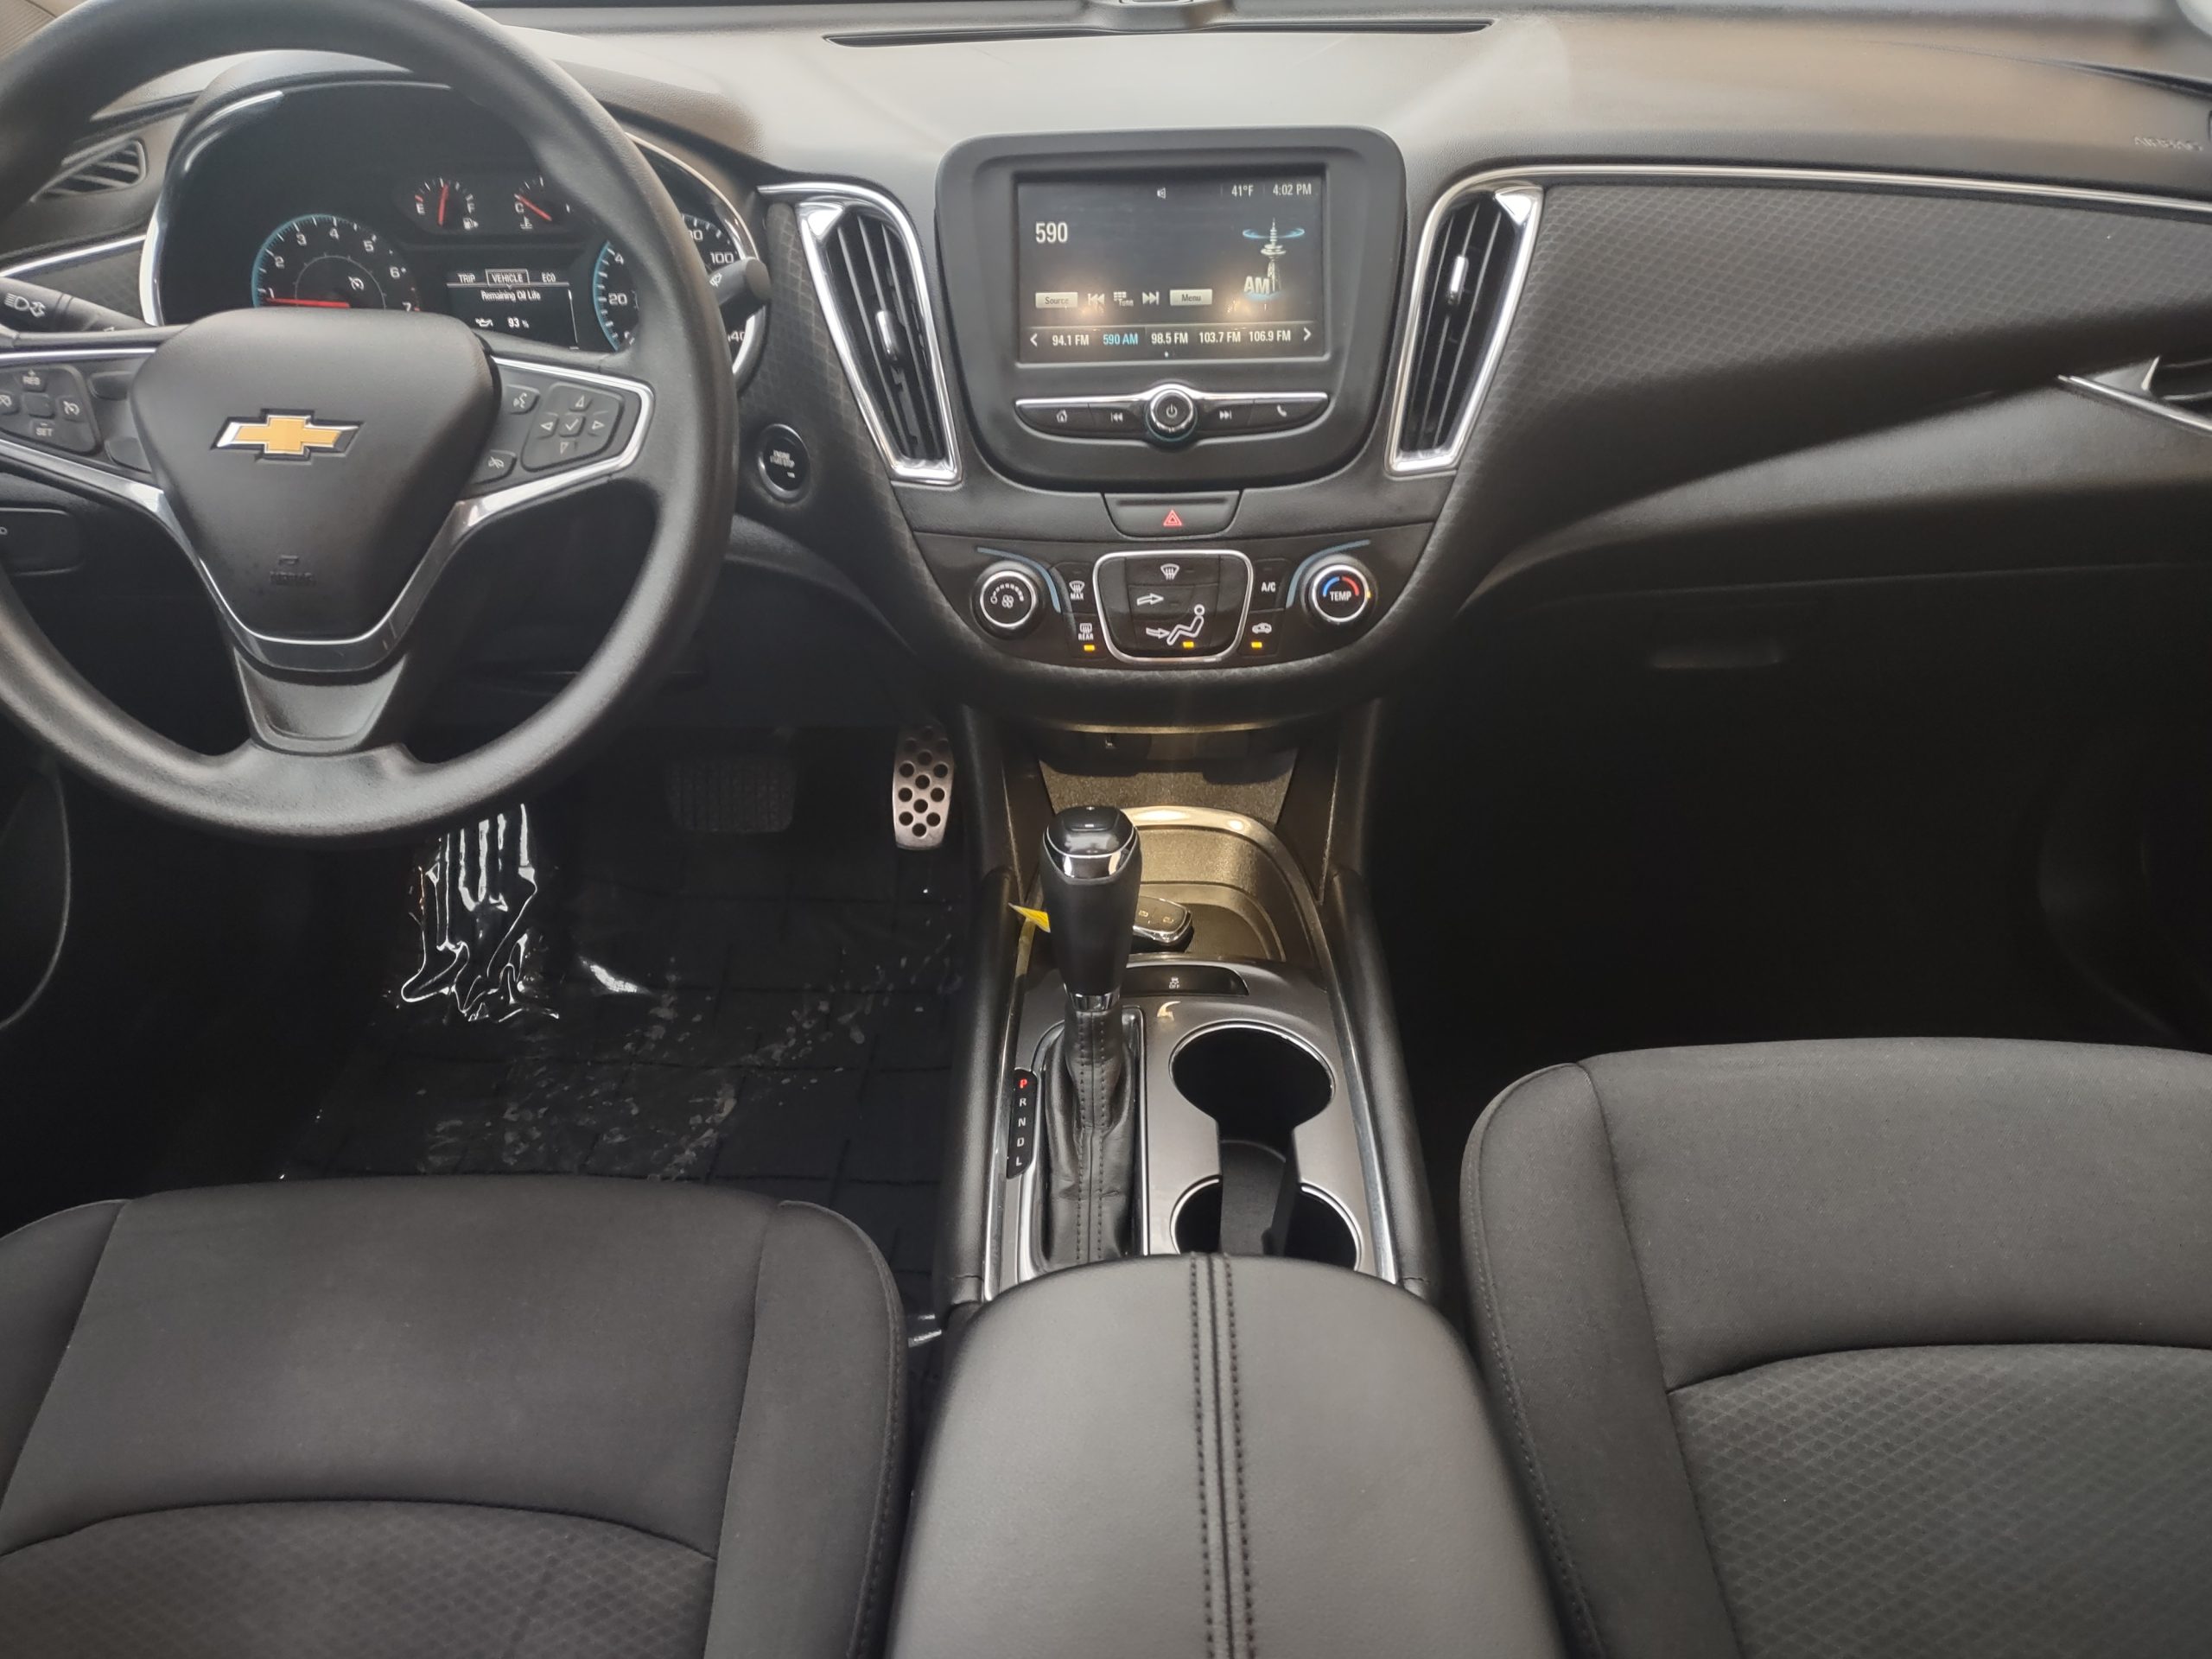 Used 2016 Chevrolet Malibu LT Sedan for sale in 